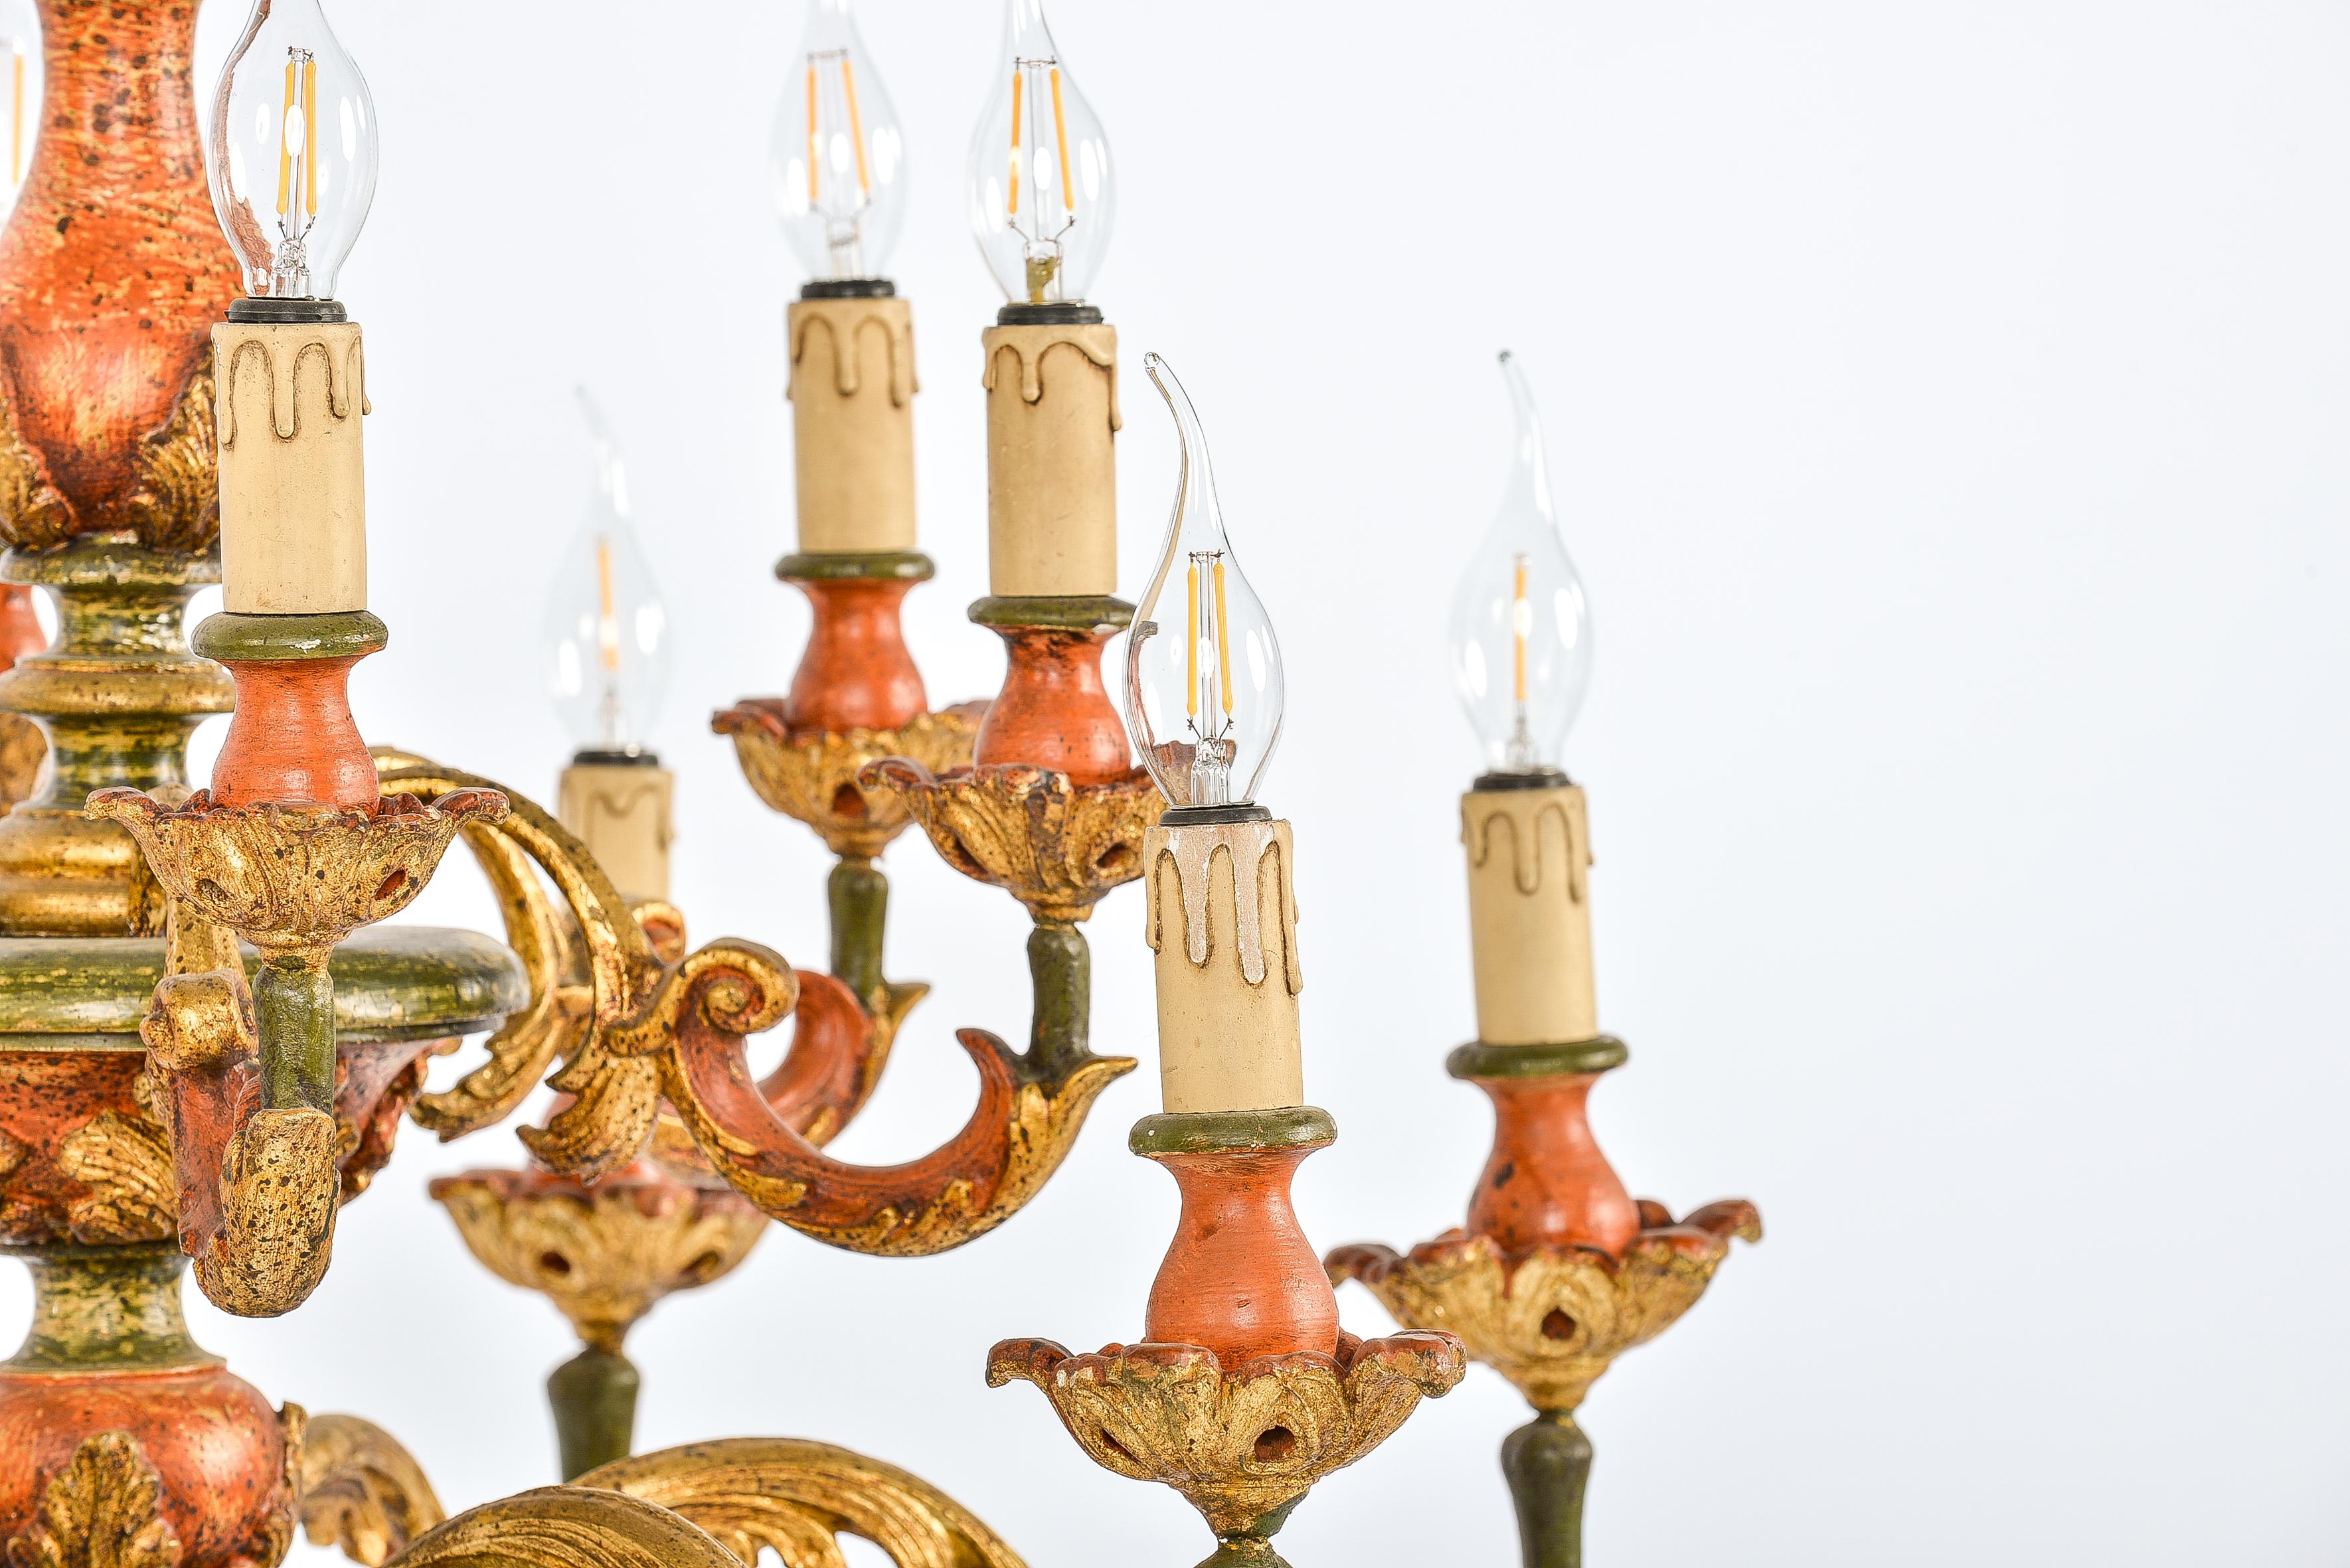 baroque inspired chandeliers